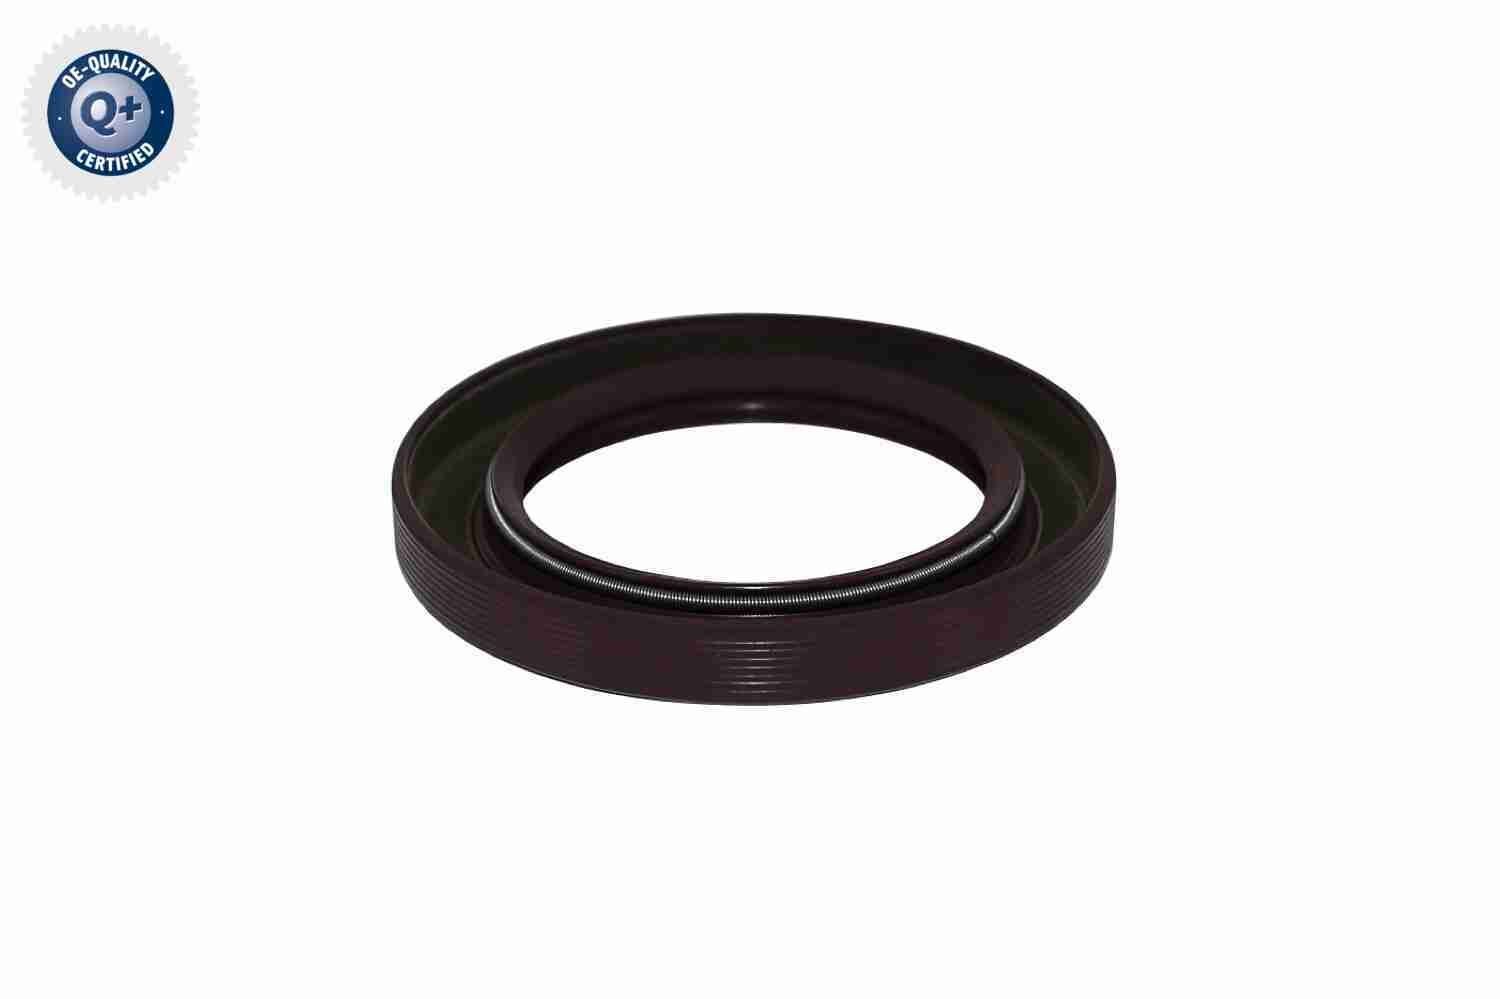 V30-6140 VAICO Crankshaft oil seal SUBARU Q+, original equipment manufacturer quality, frontal sided